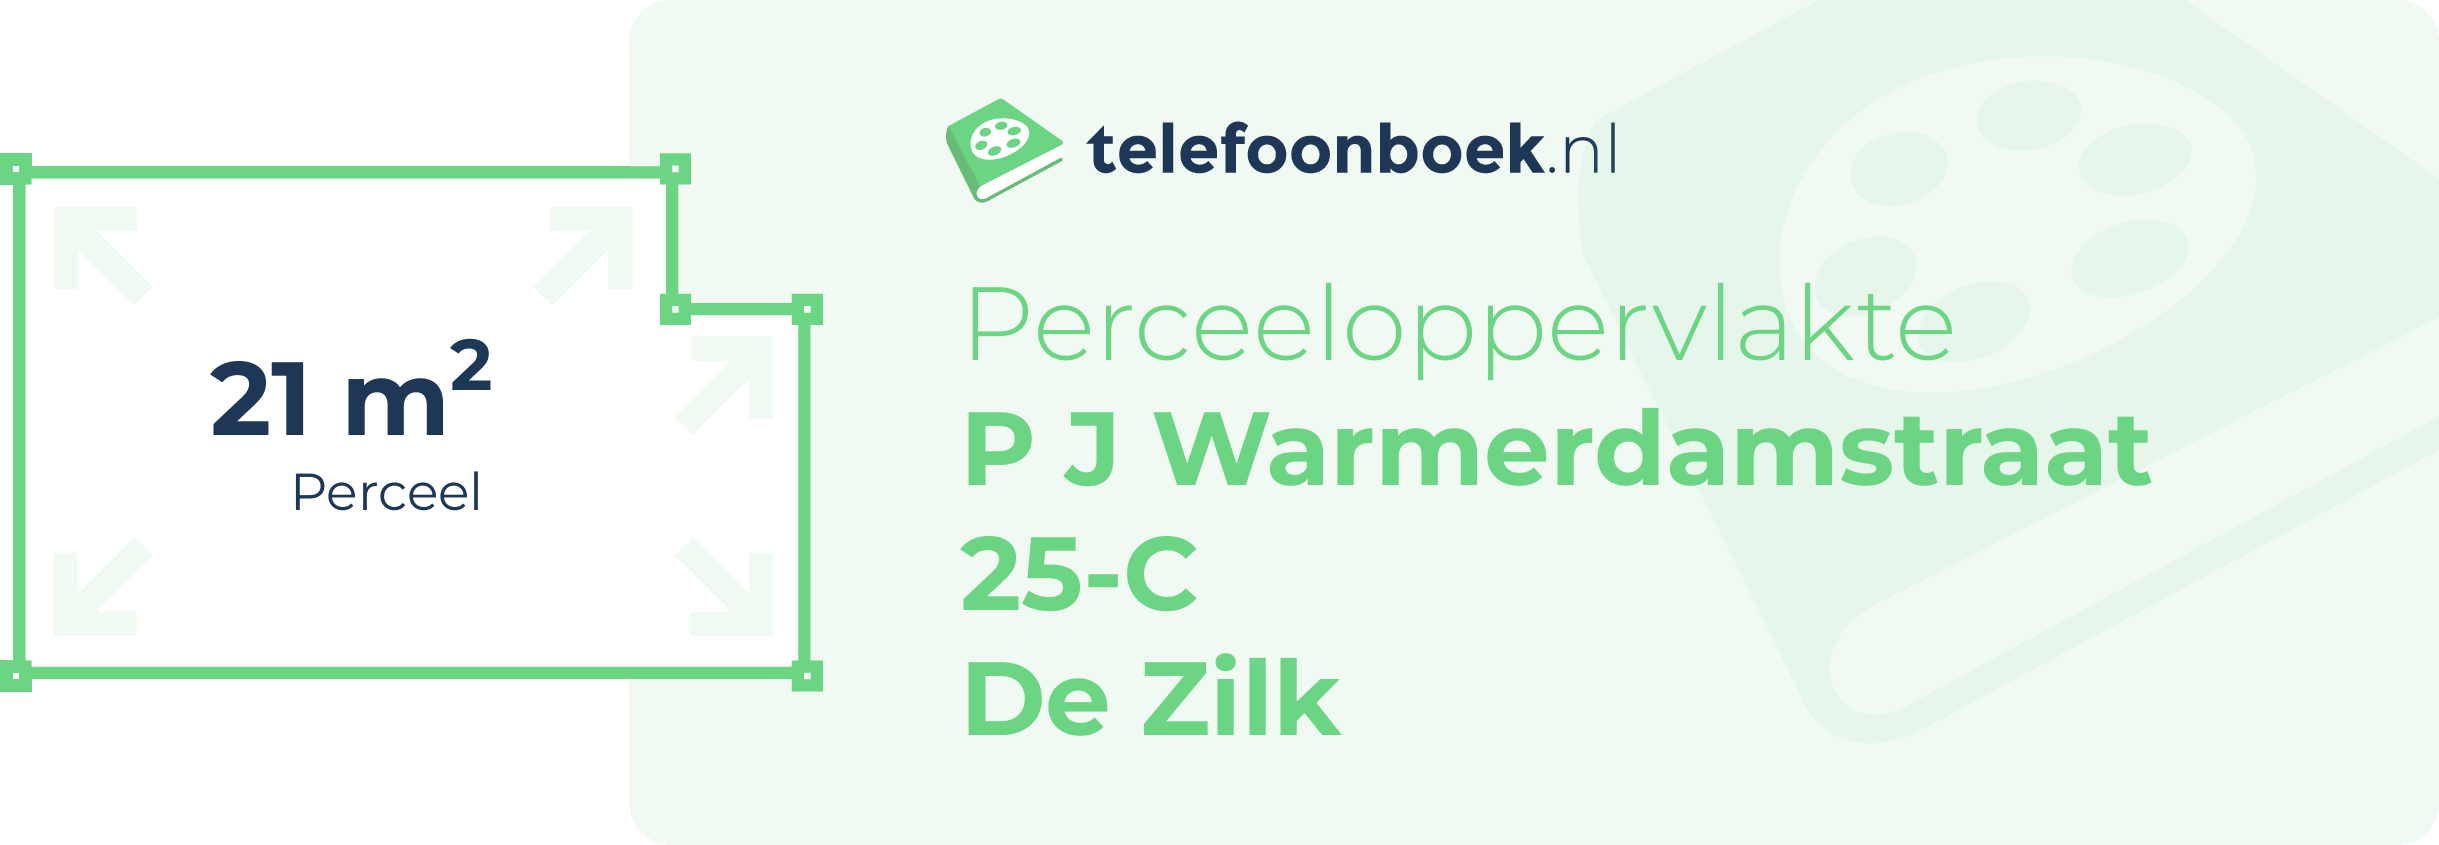 Perceeloppervlakte P J Warmerdamstraat 25-C De Zilk